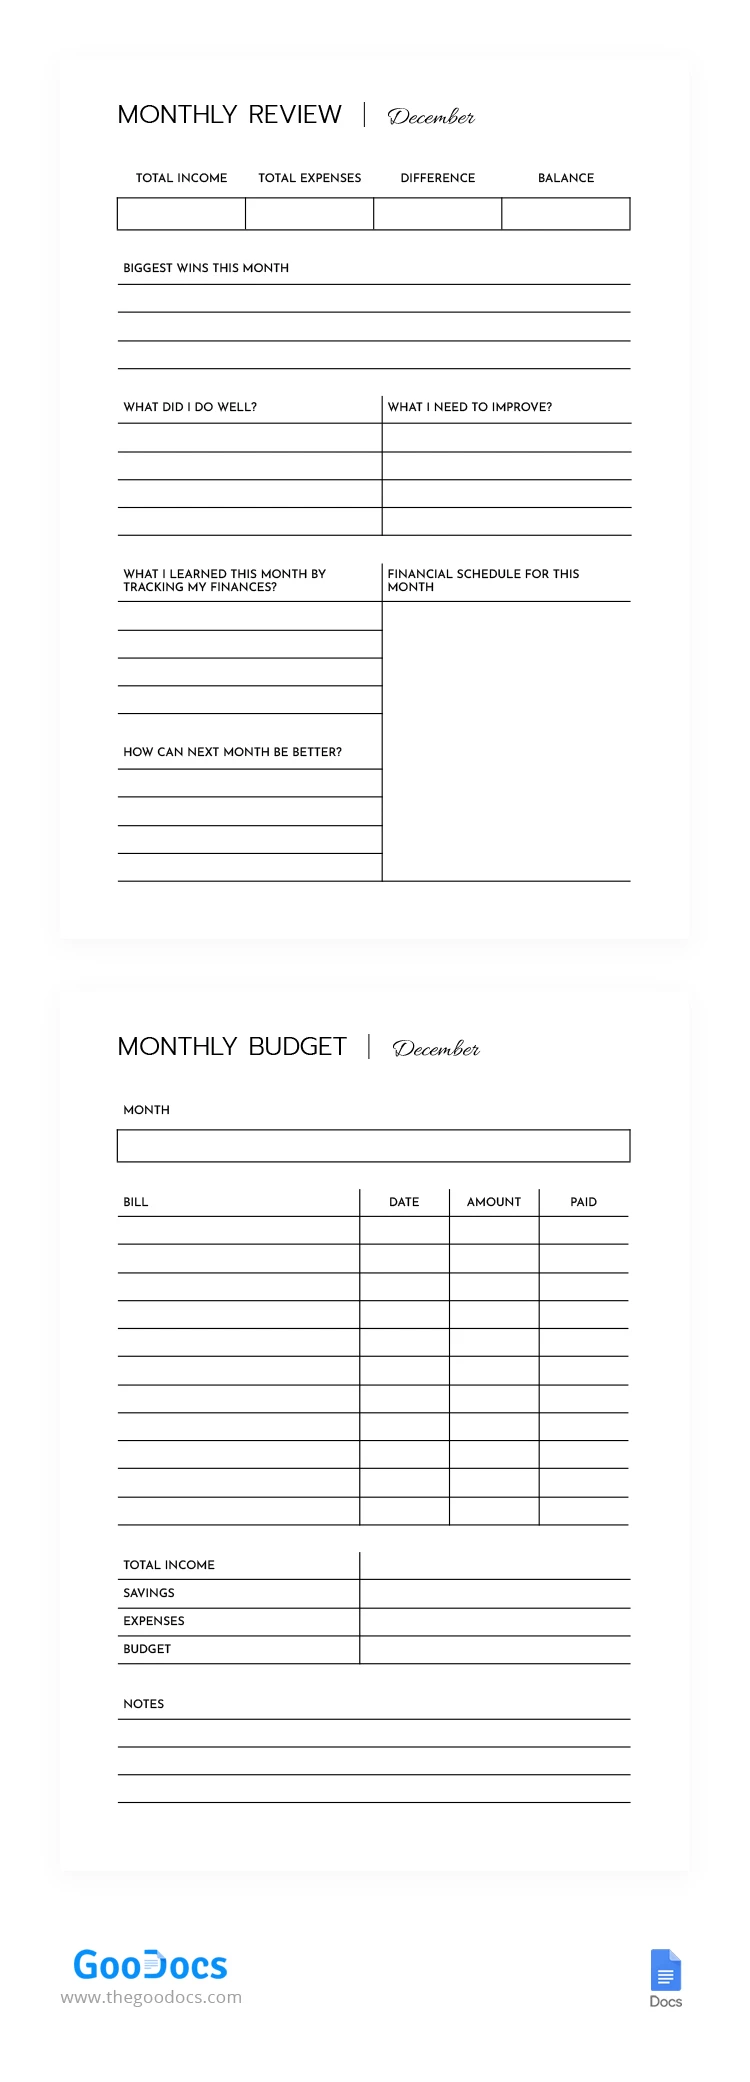 Monatlicher Finanzhaushalt - free Google Docs Template - 10068568